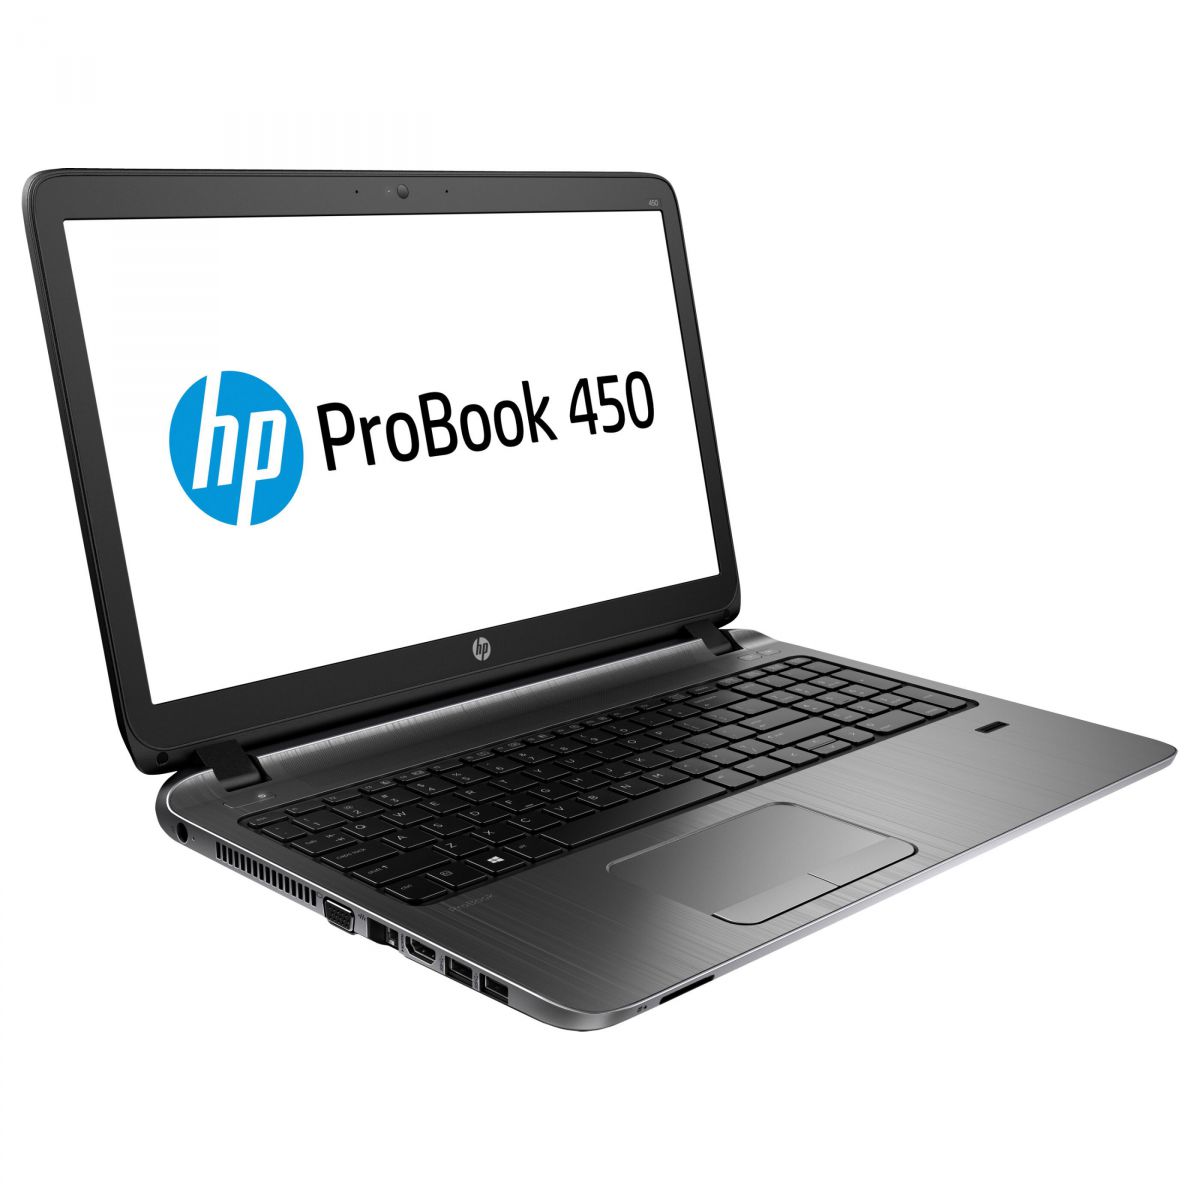 Hp probook 450 g2(Intel Core i5-5200U/2.2 GHz/8GB/120GB SSD/Intel HD Graphics 5500/15,6')